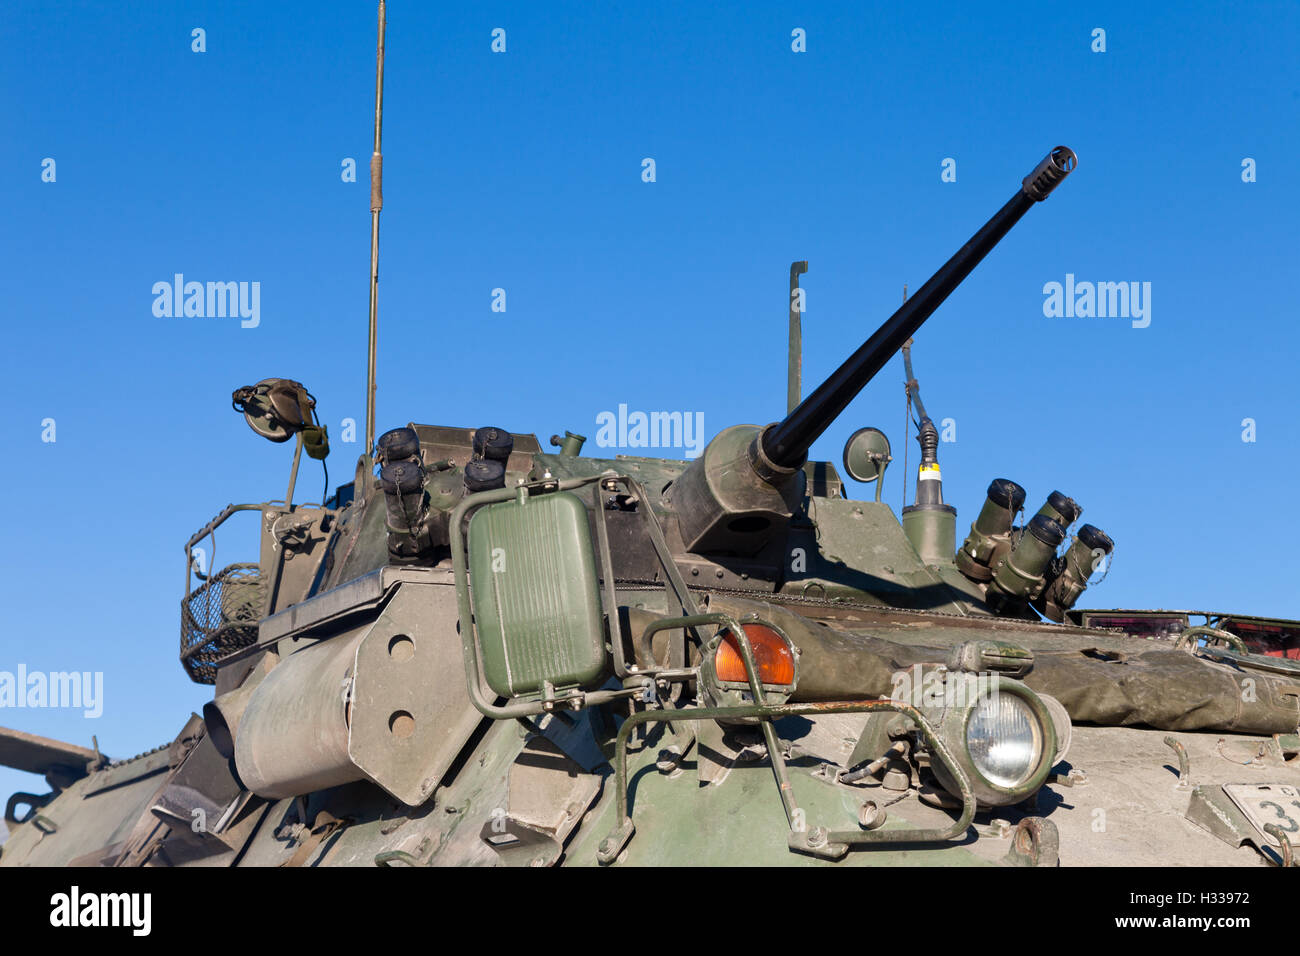 Armored tank militaire opérationnelle tourelle Banque D'Images